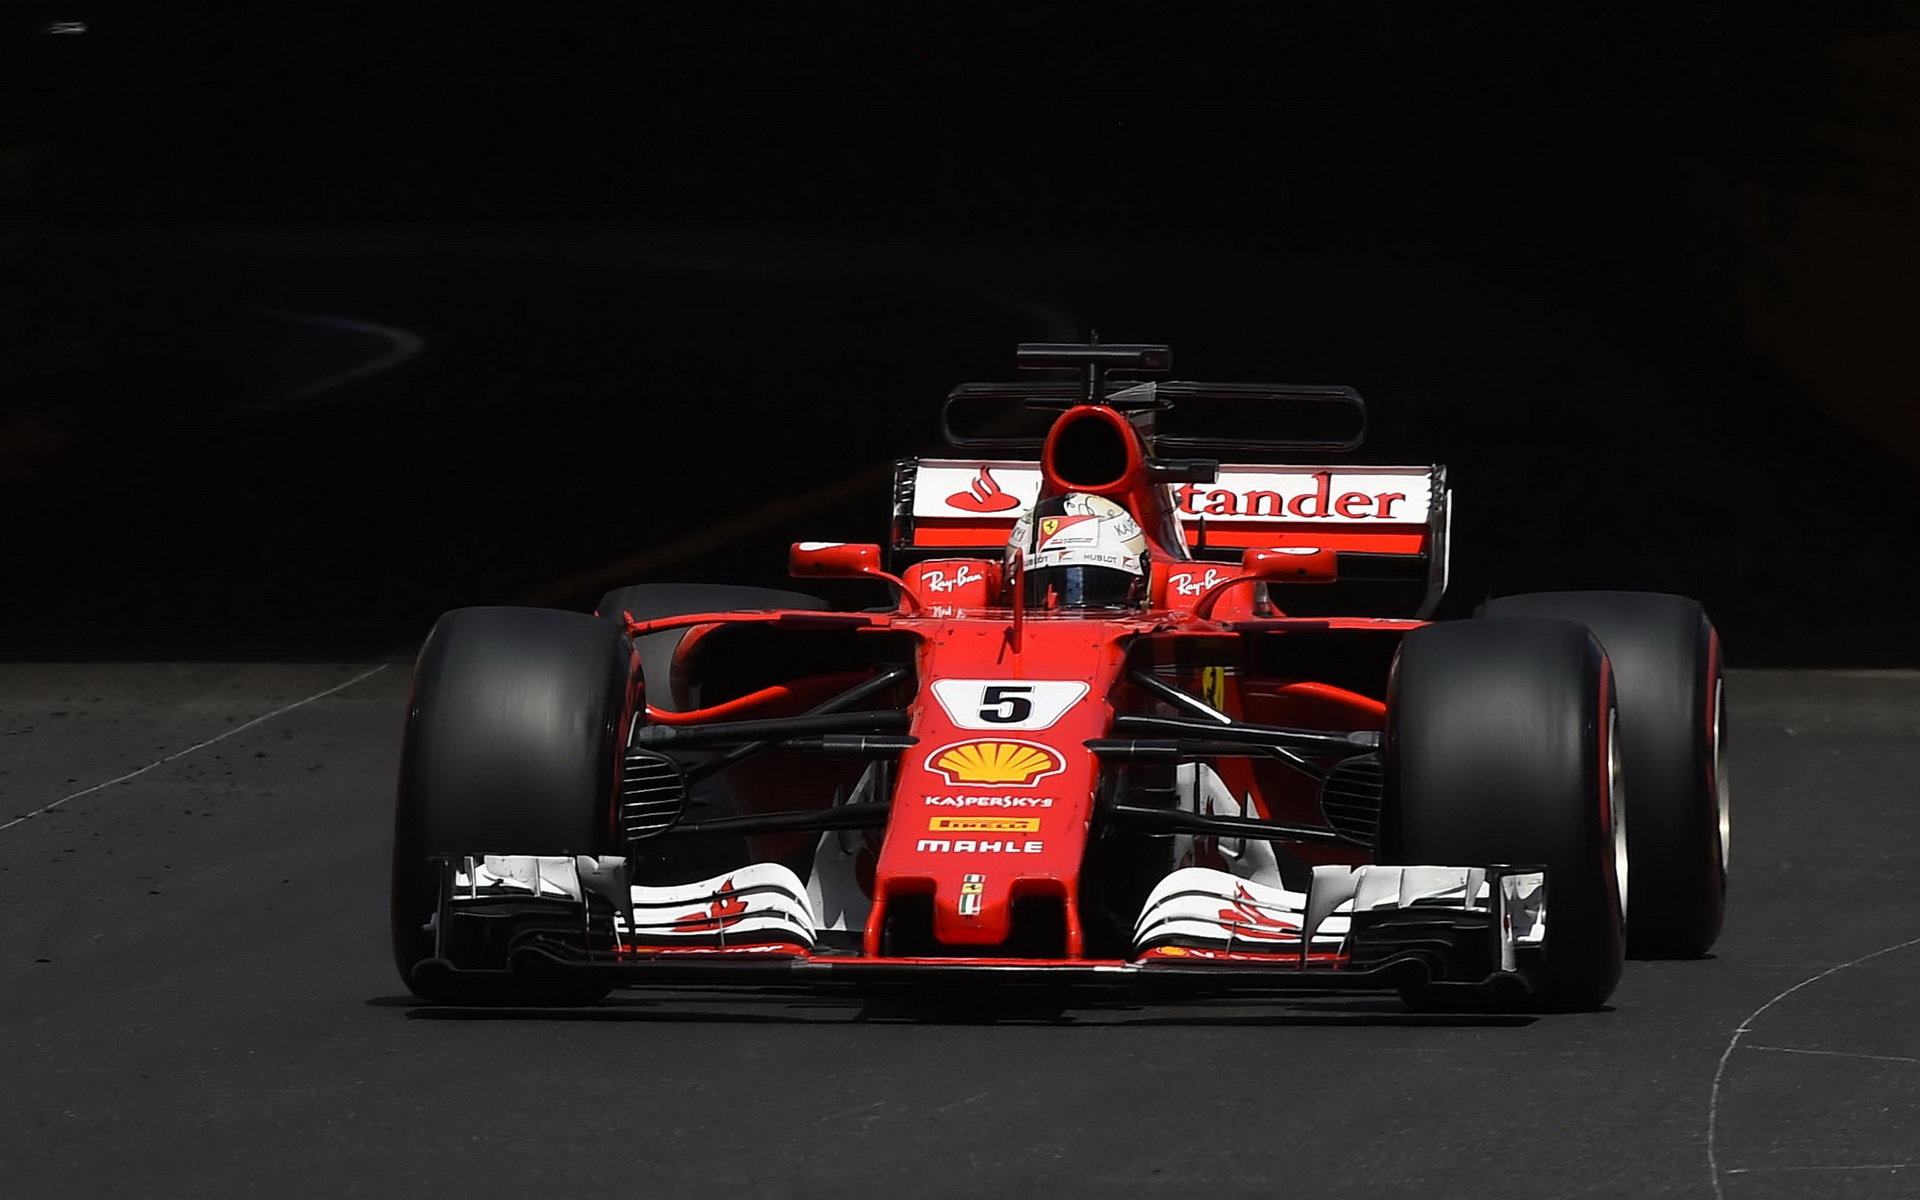 Ferrari má momentálně lepší auto - na rozdíl od Mercedesu funguje za všech podmínek